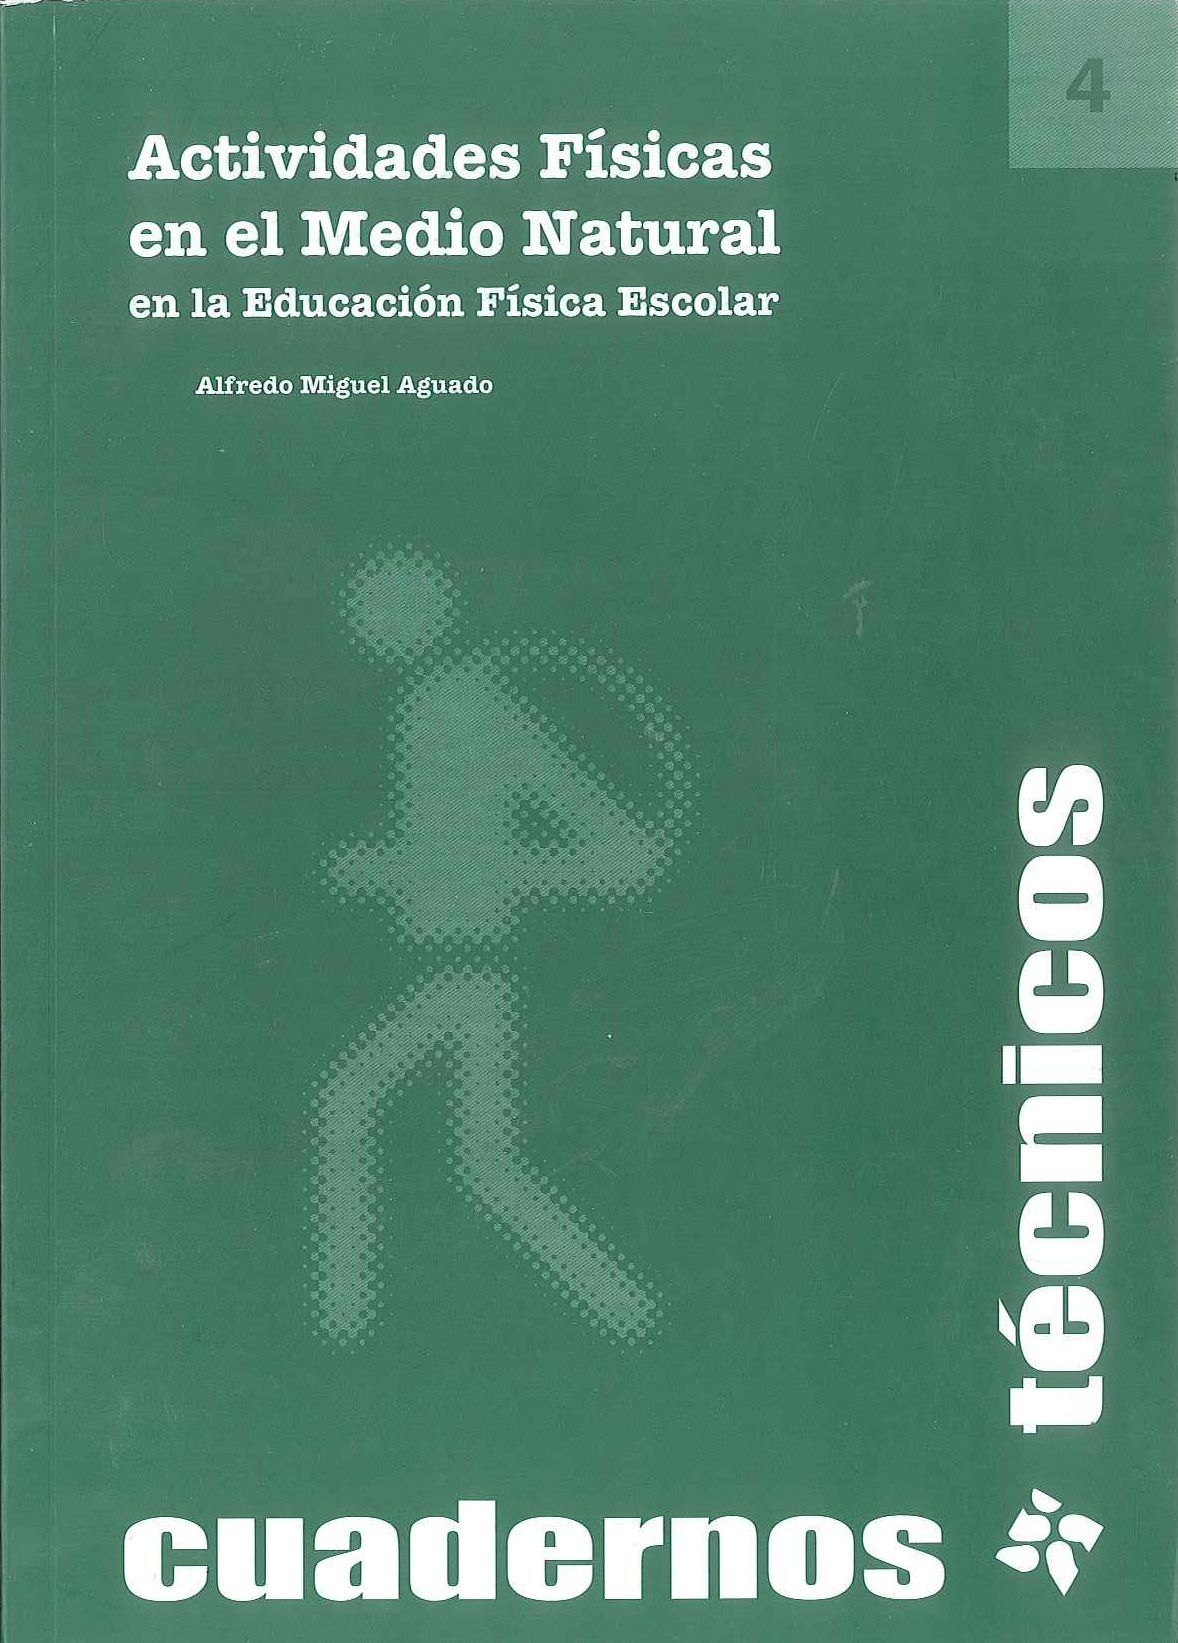 Imagen de portada del libro Actividades físicas en el medio natural en la Educación Física Escolar